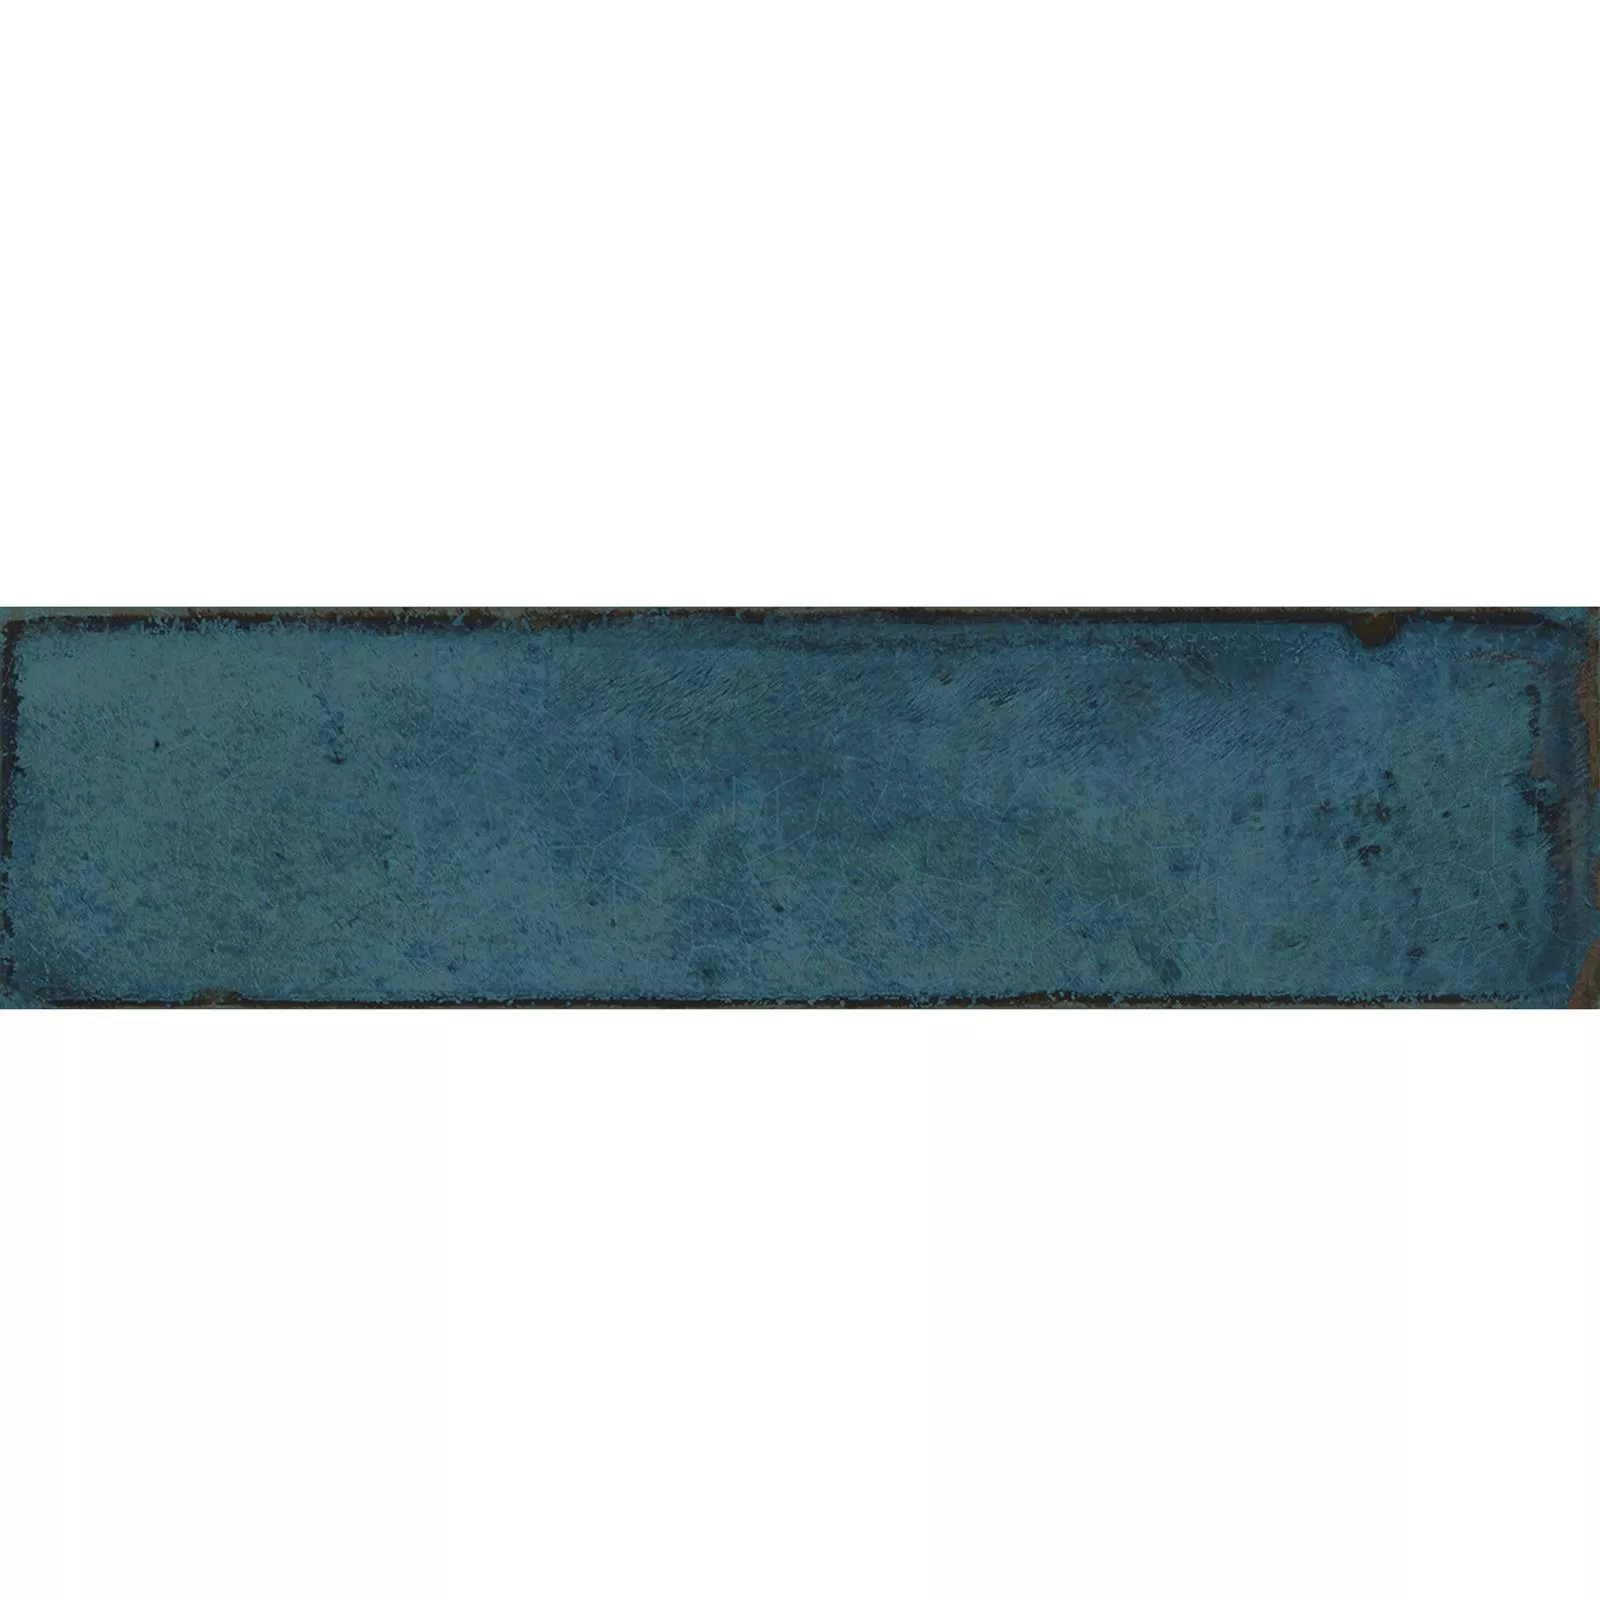 Próbka Płytki Ścienne Maestro Karbowany Błyszczący Niebieski 7,5x30cm